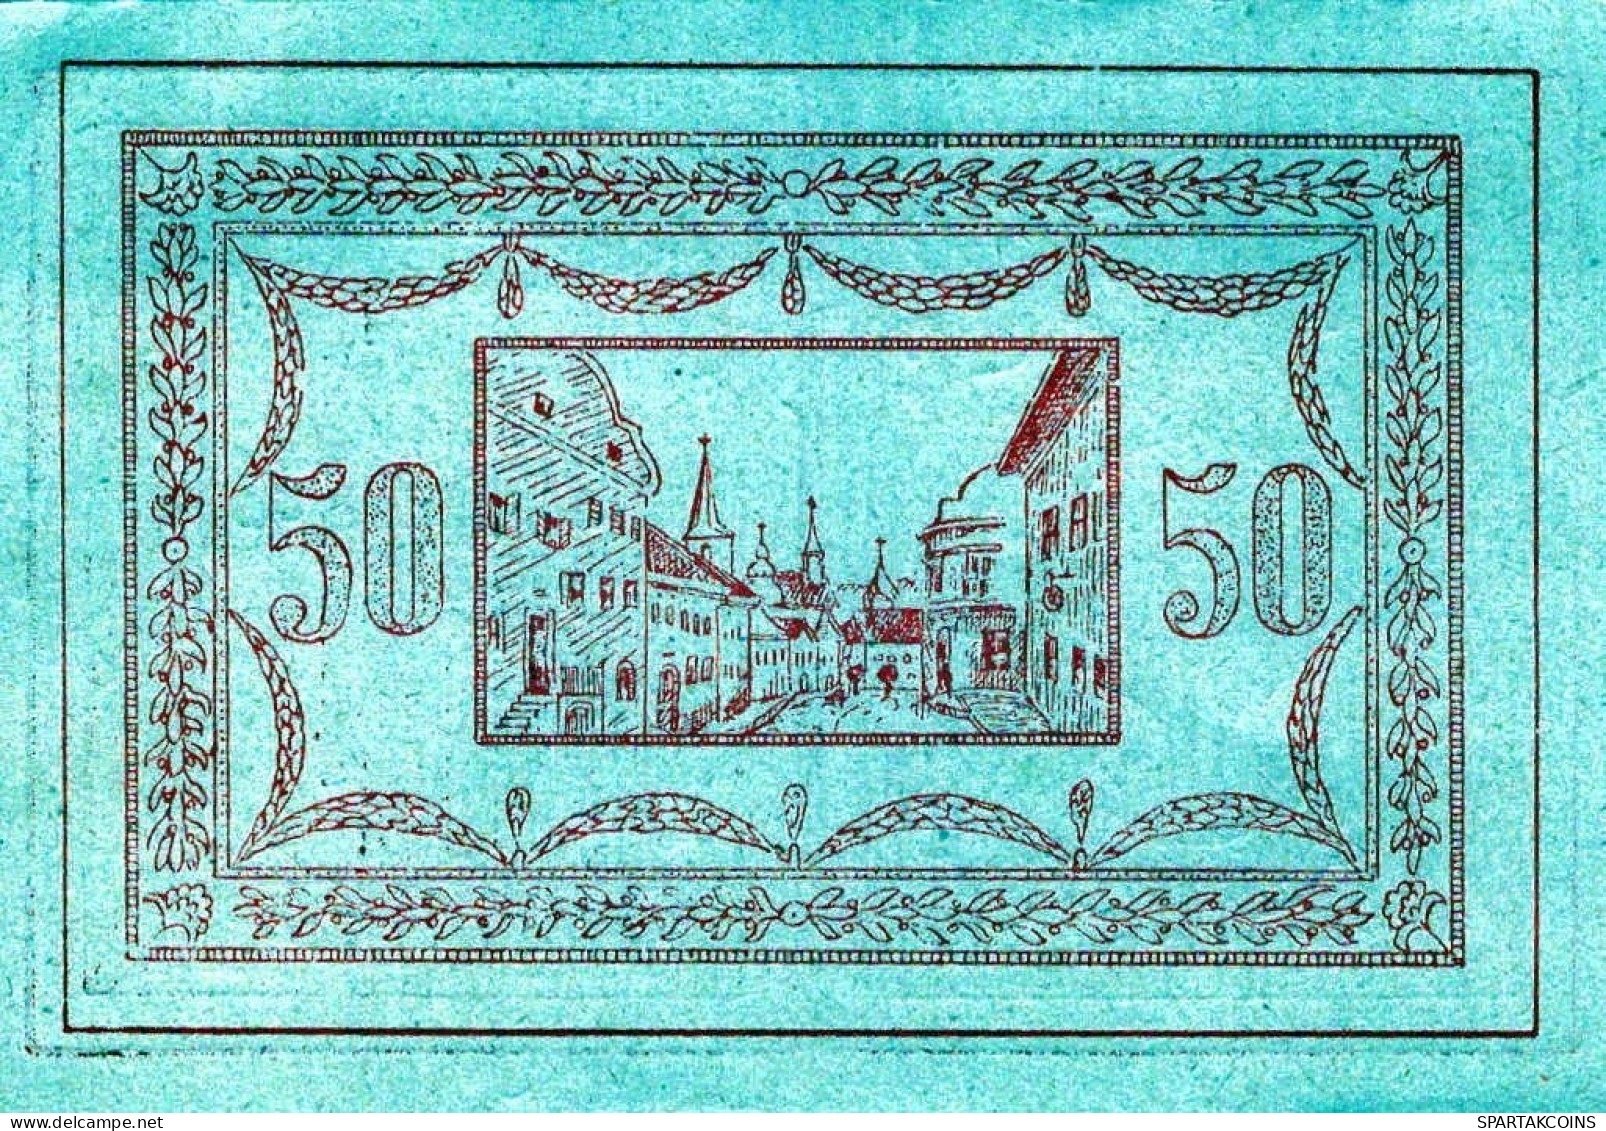 50 HELLER 1920 Stadt SARLEINSBACH Oberösterreich Österreich UNC Österreich Notgeld #PH398 - [11] Local Banknote Issues